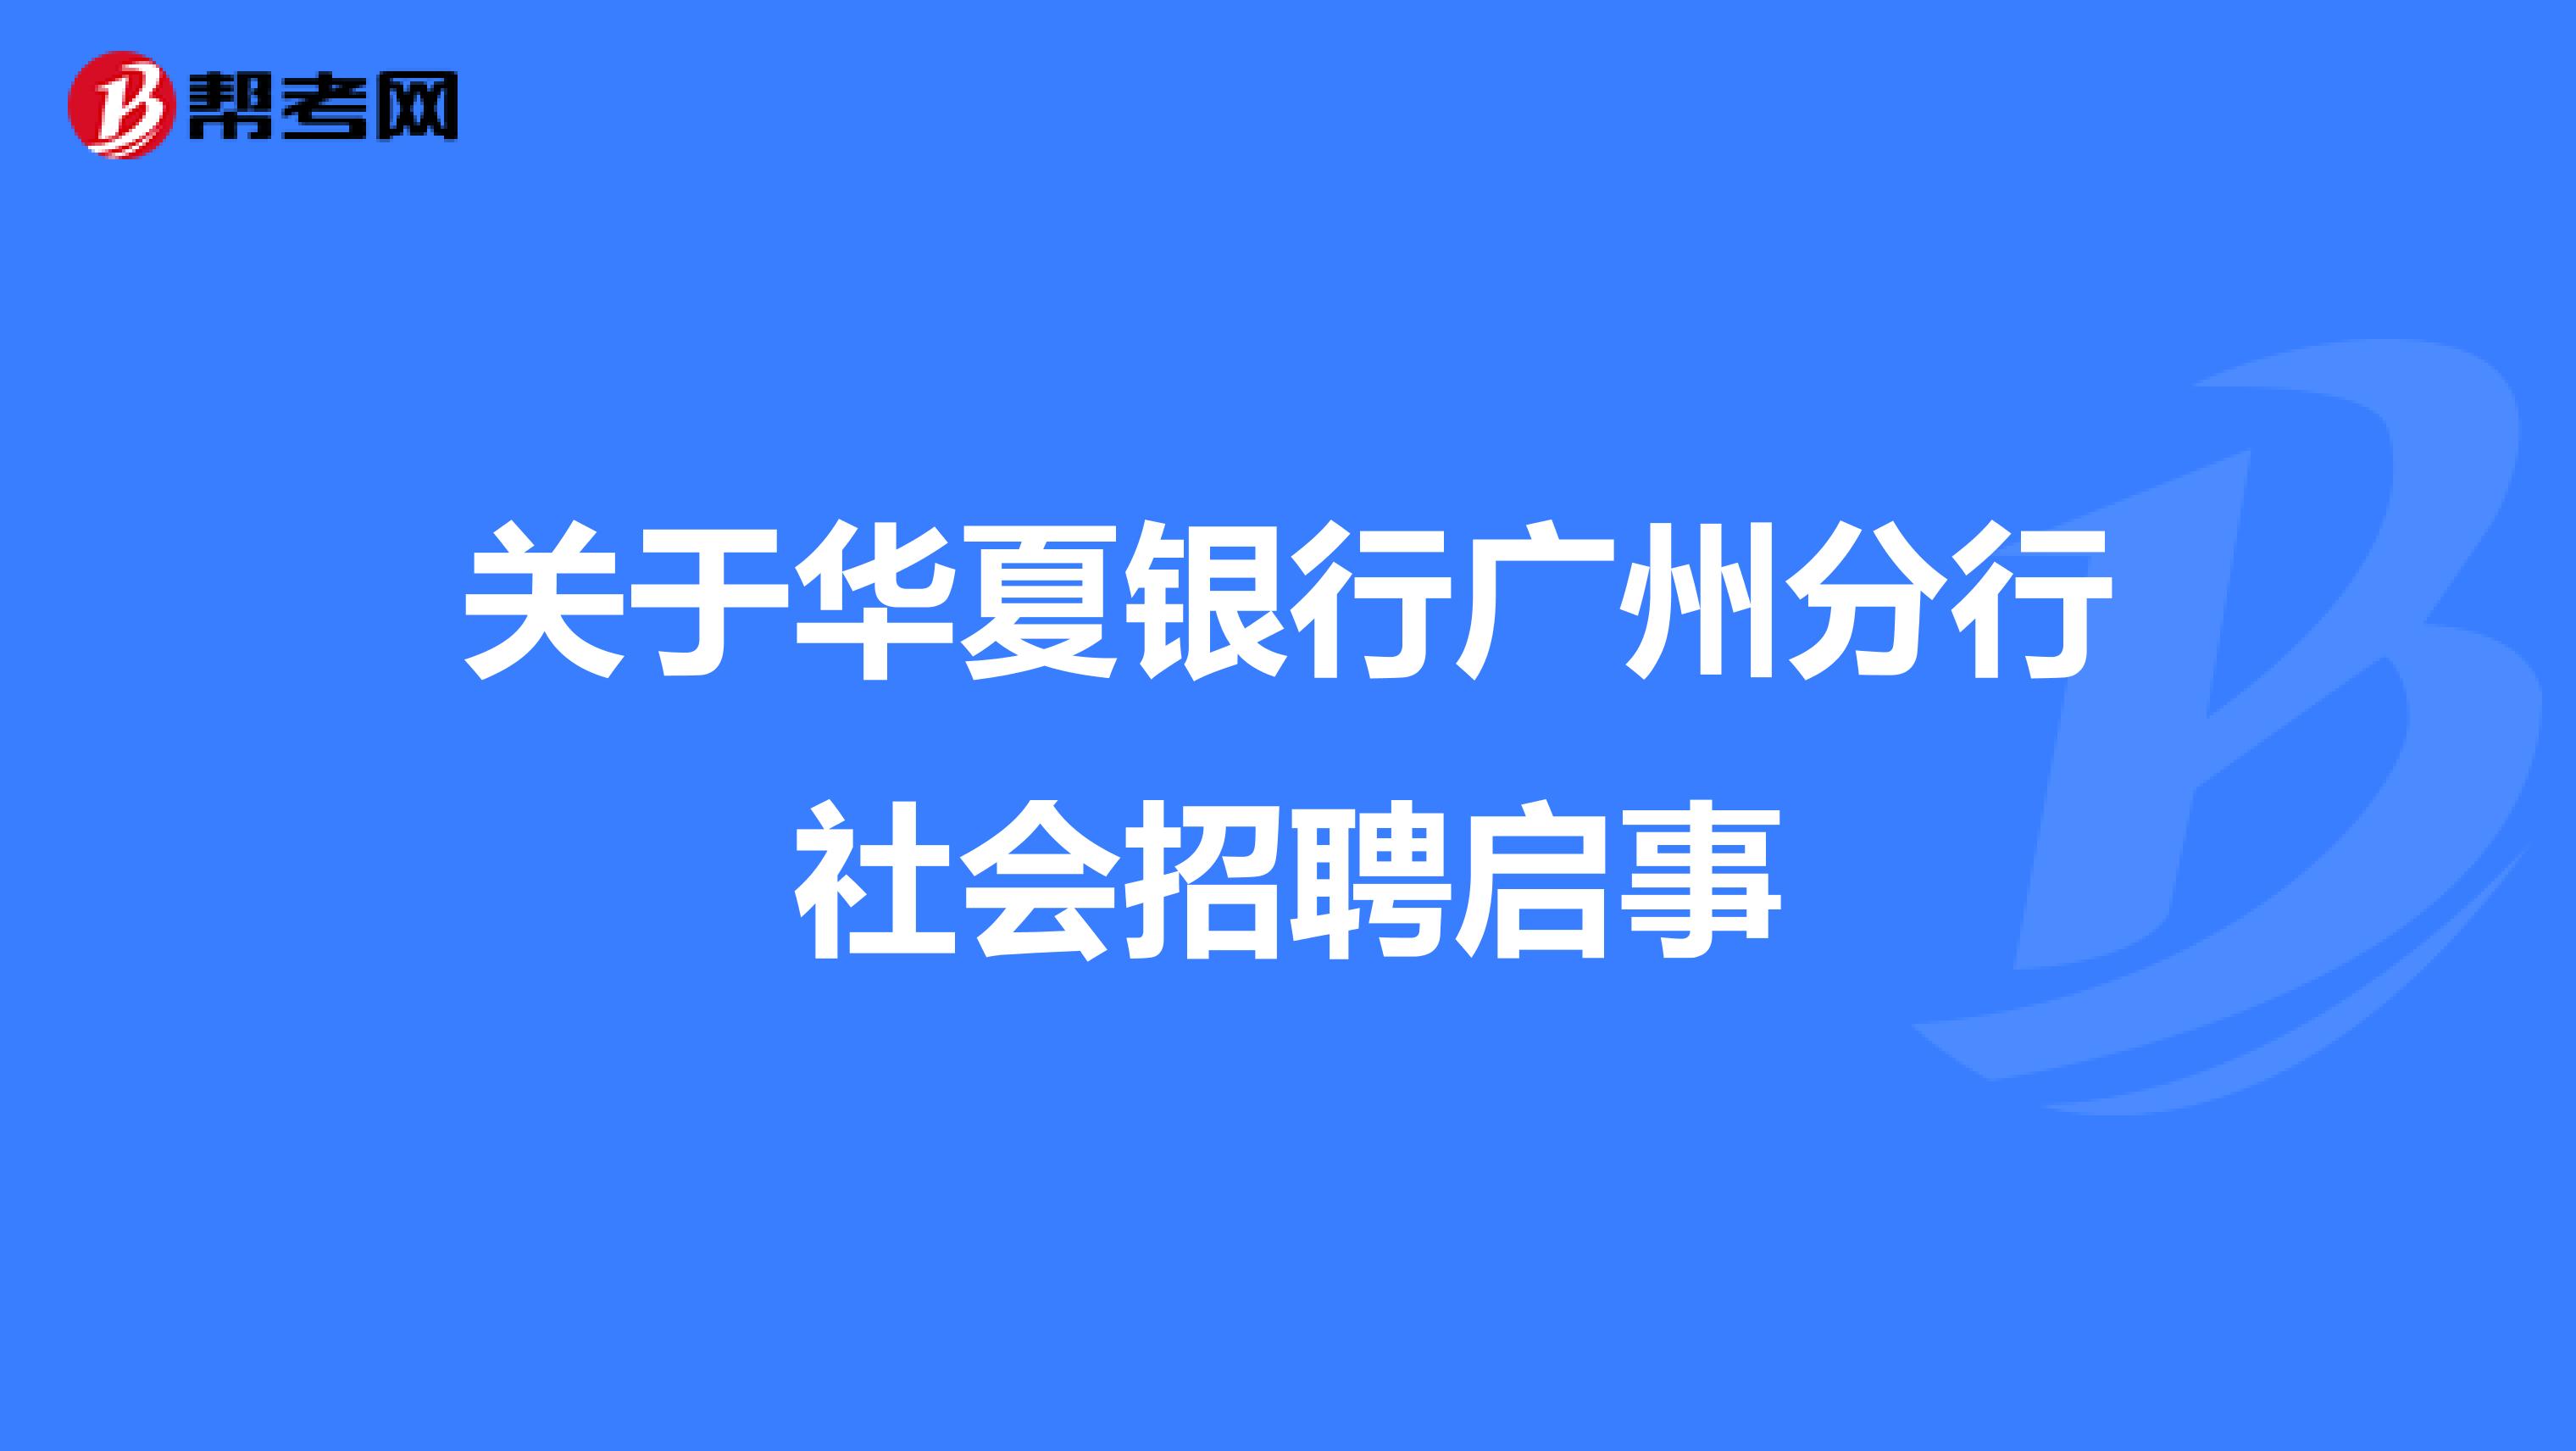 关于华夏银行广州分行社会招聘启事